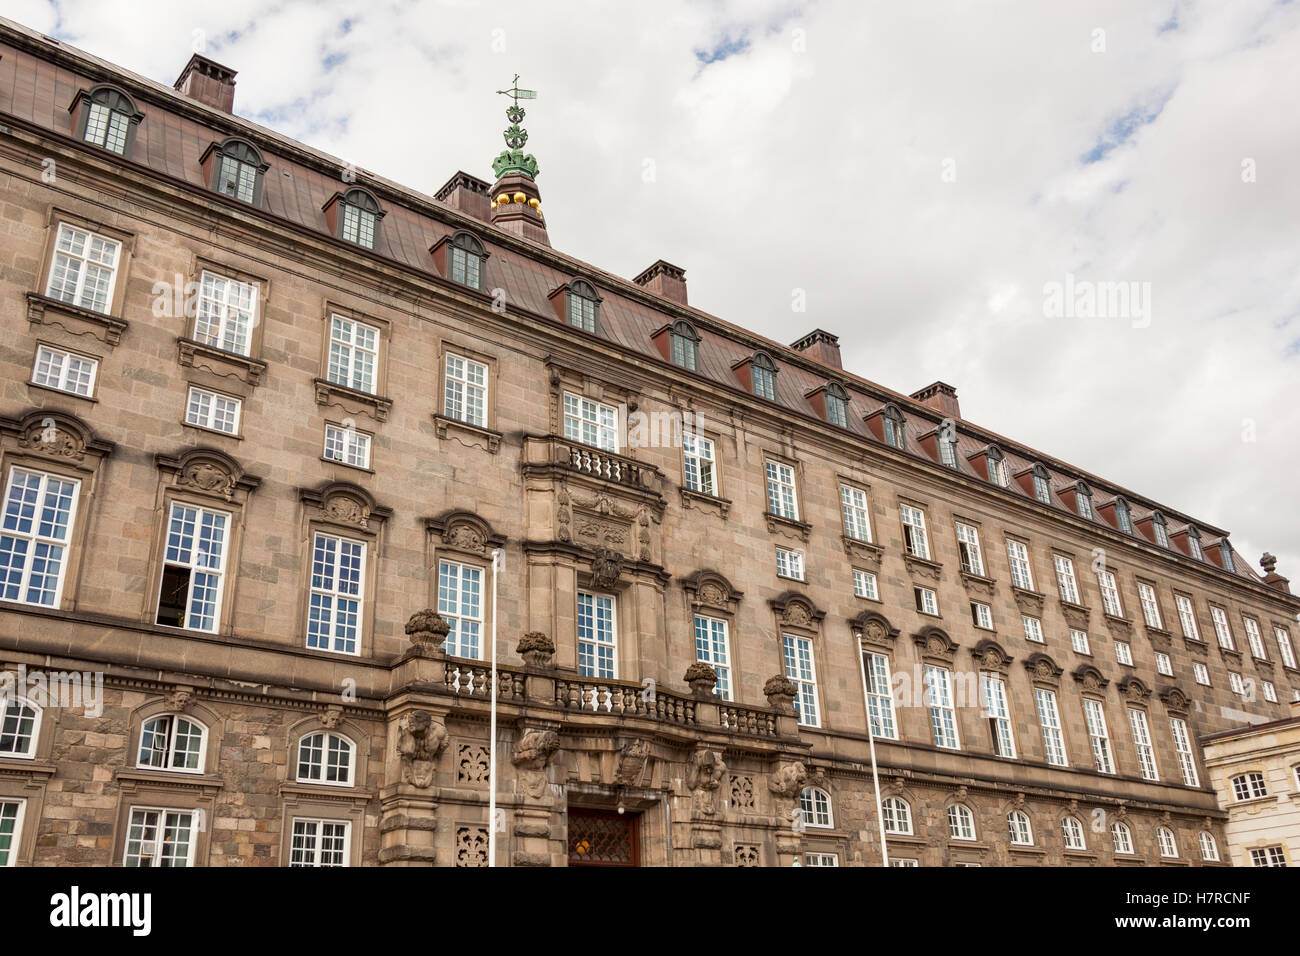 Le bâtiment du Parlement, Christiansborg Palace, Slotsholmen, Copenhague, Danemark Banque D'Images